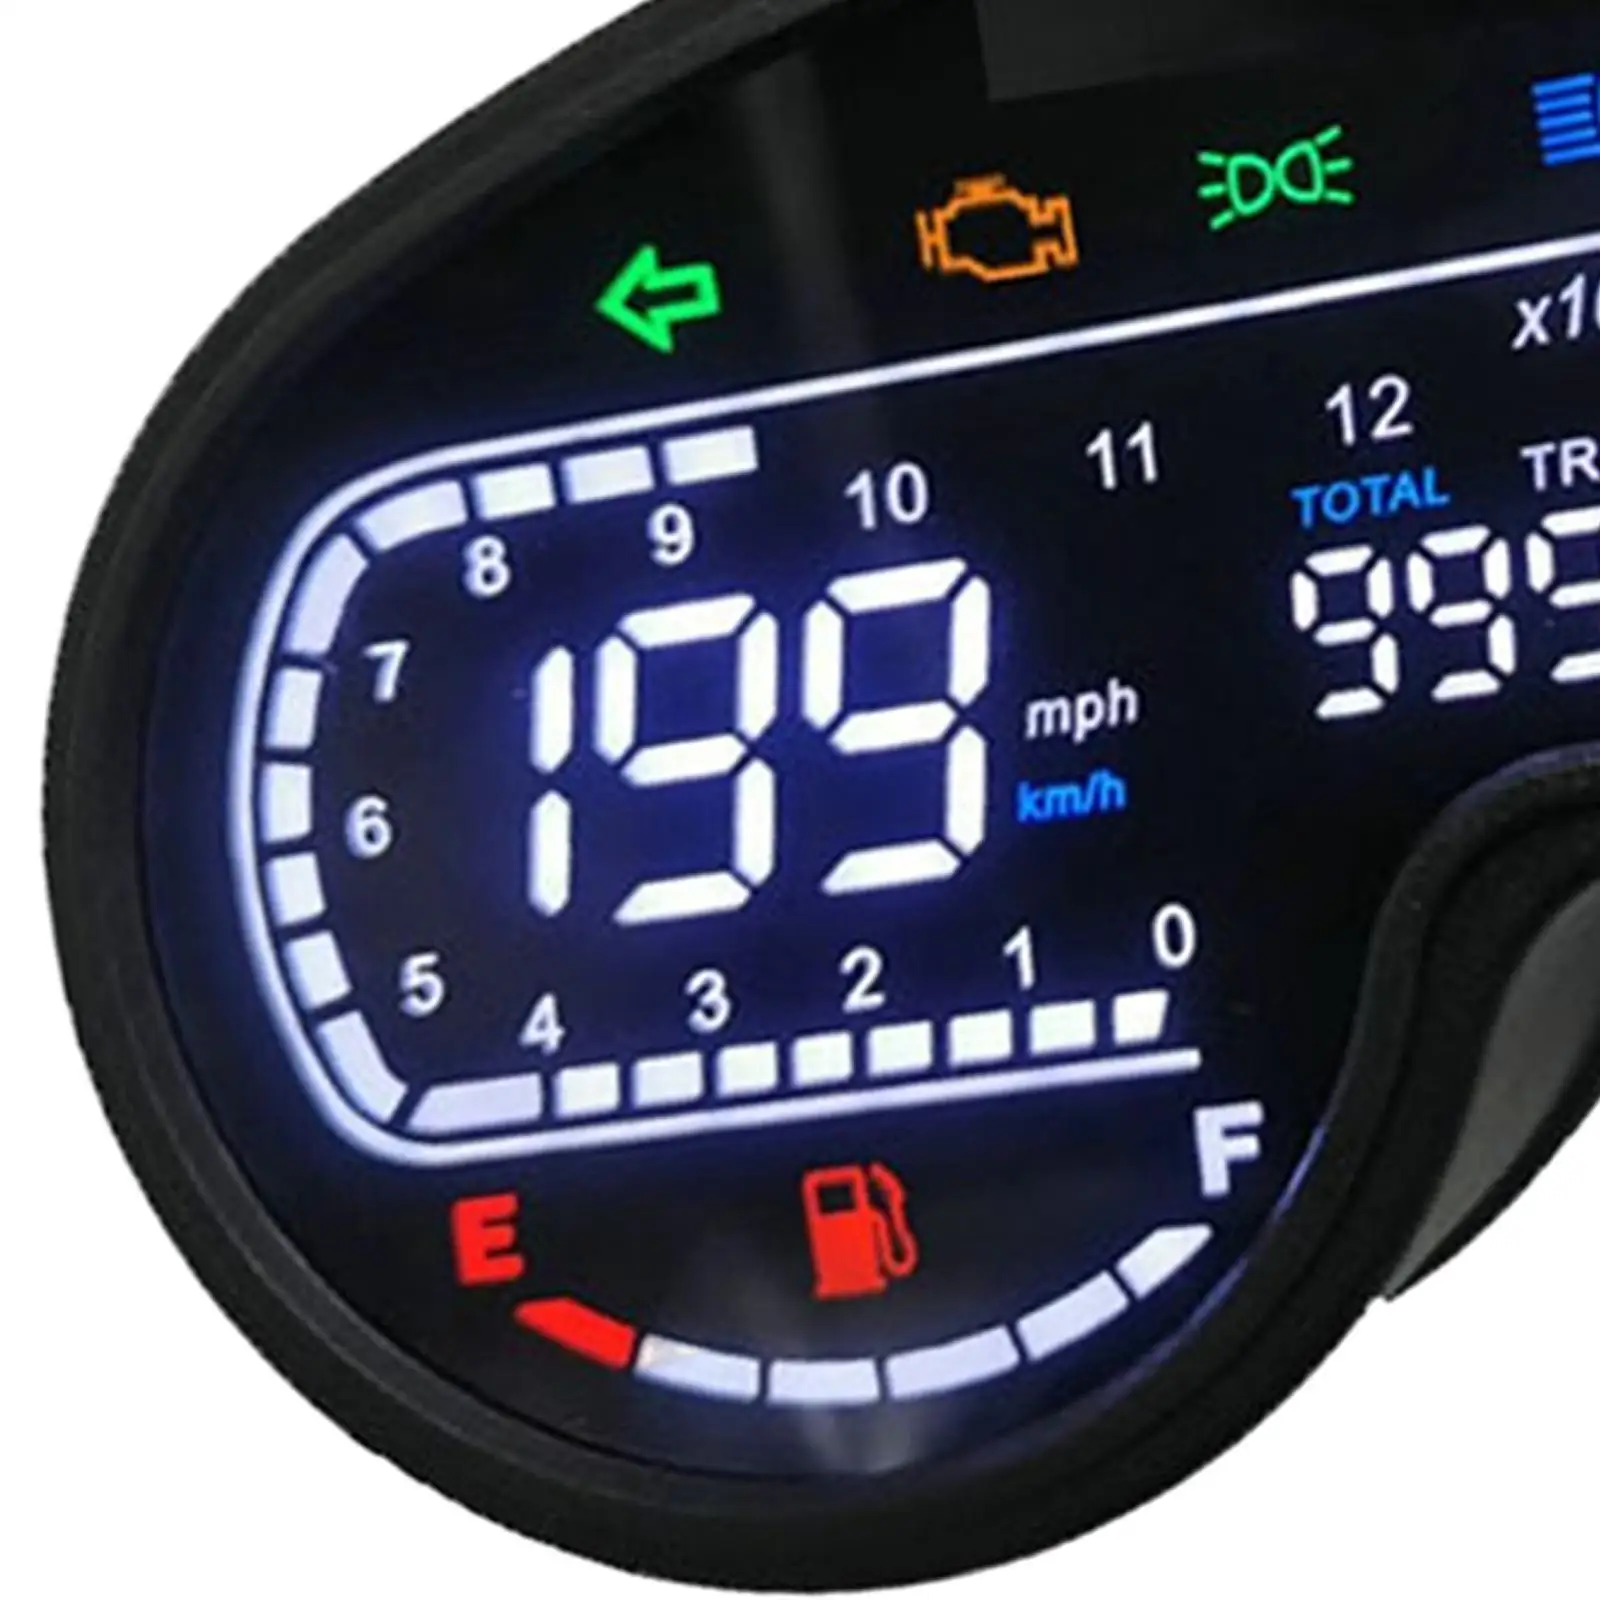 

Motorcycle Speedometer Odometer Tachometer Meter for XR150 CRV Replace